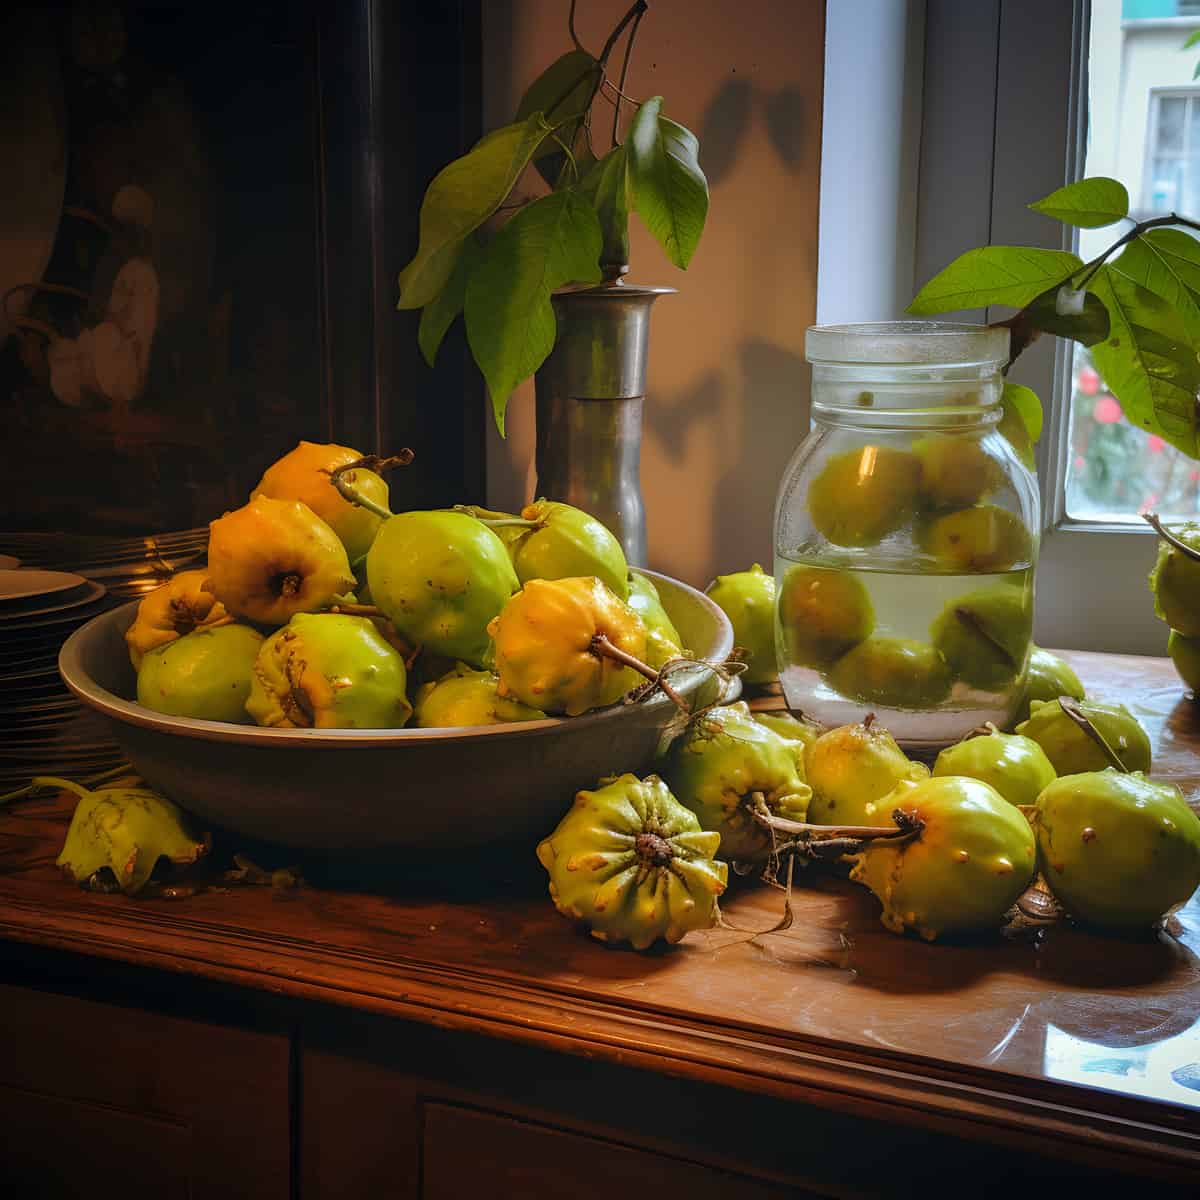 Kwai Muk Fruit on a kitchen counter